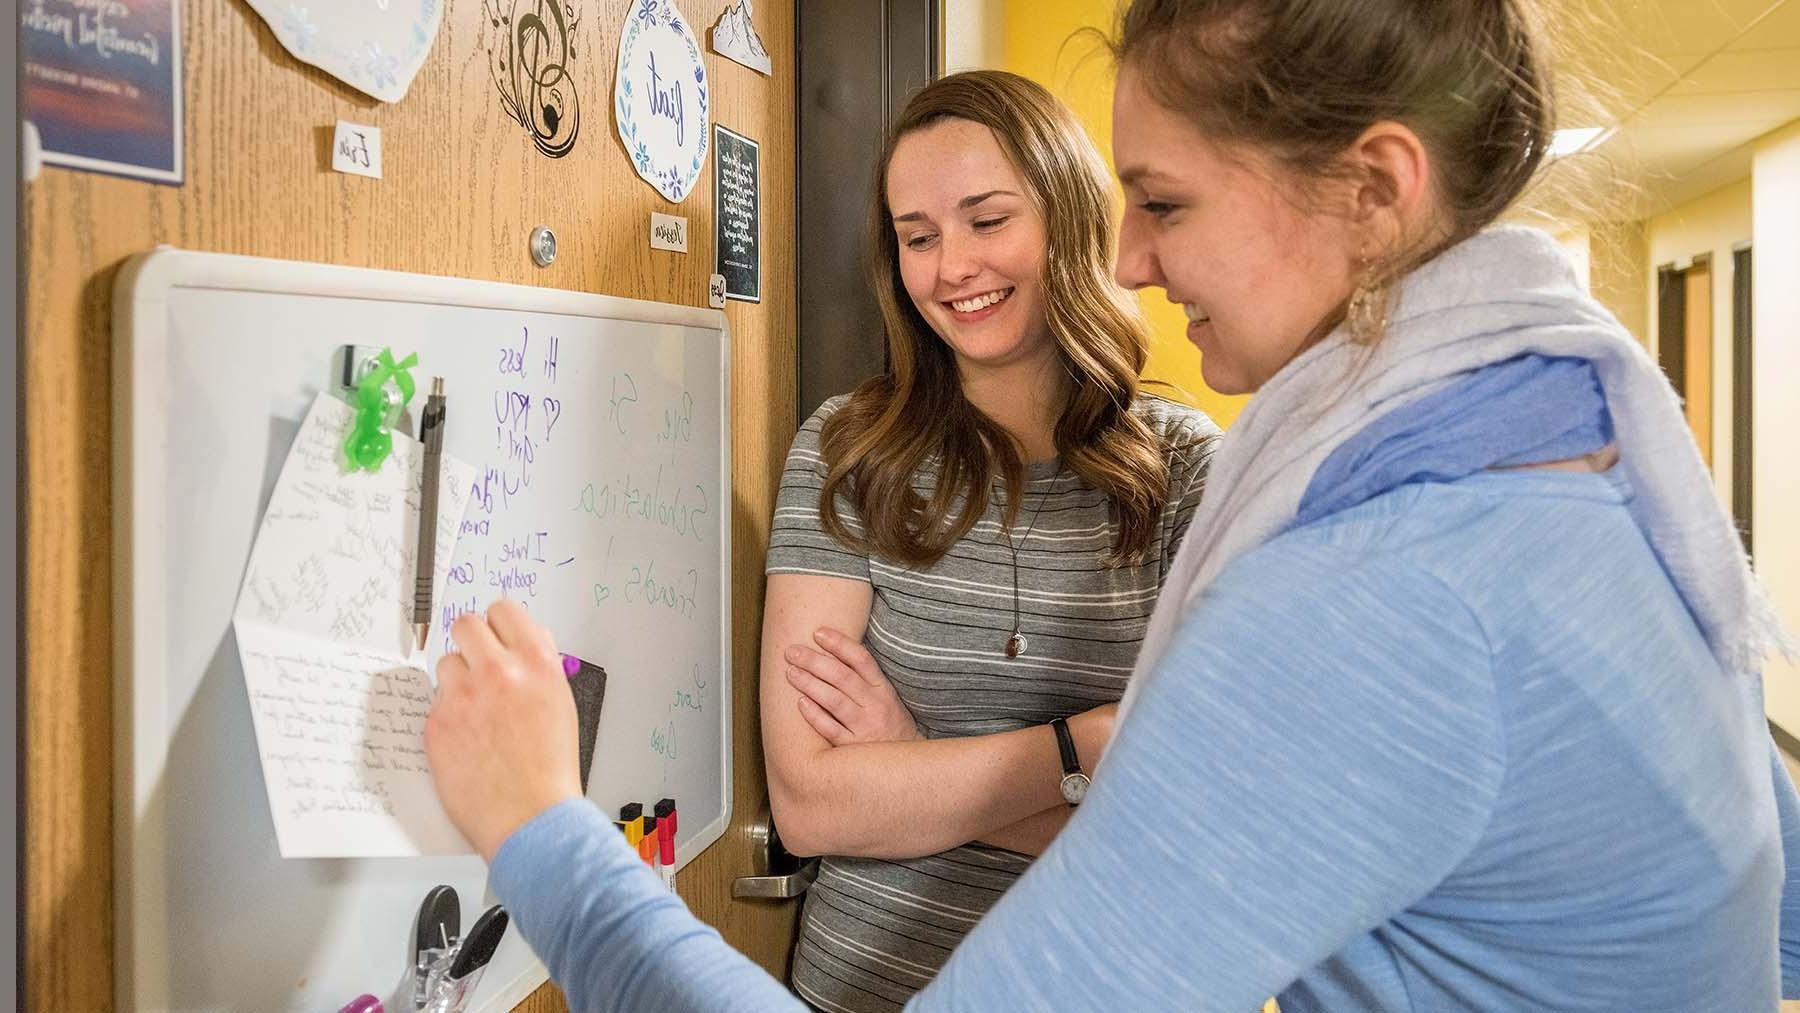 两个女孩微笑着在宿舍门上的黑板上写着信息